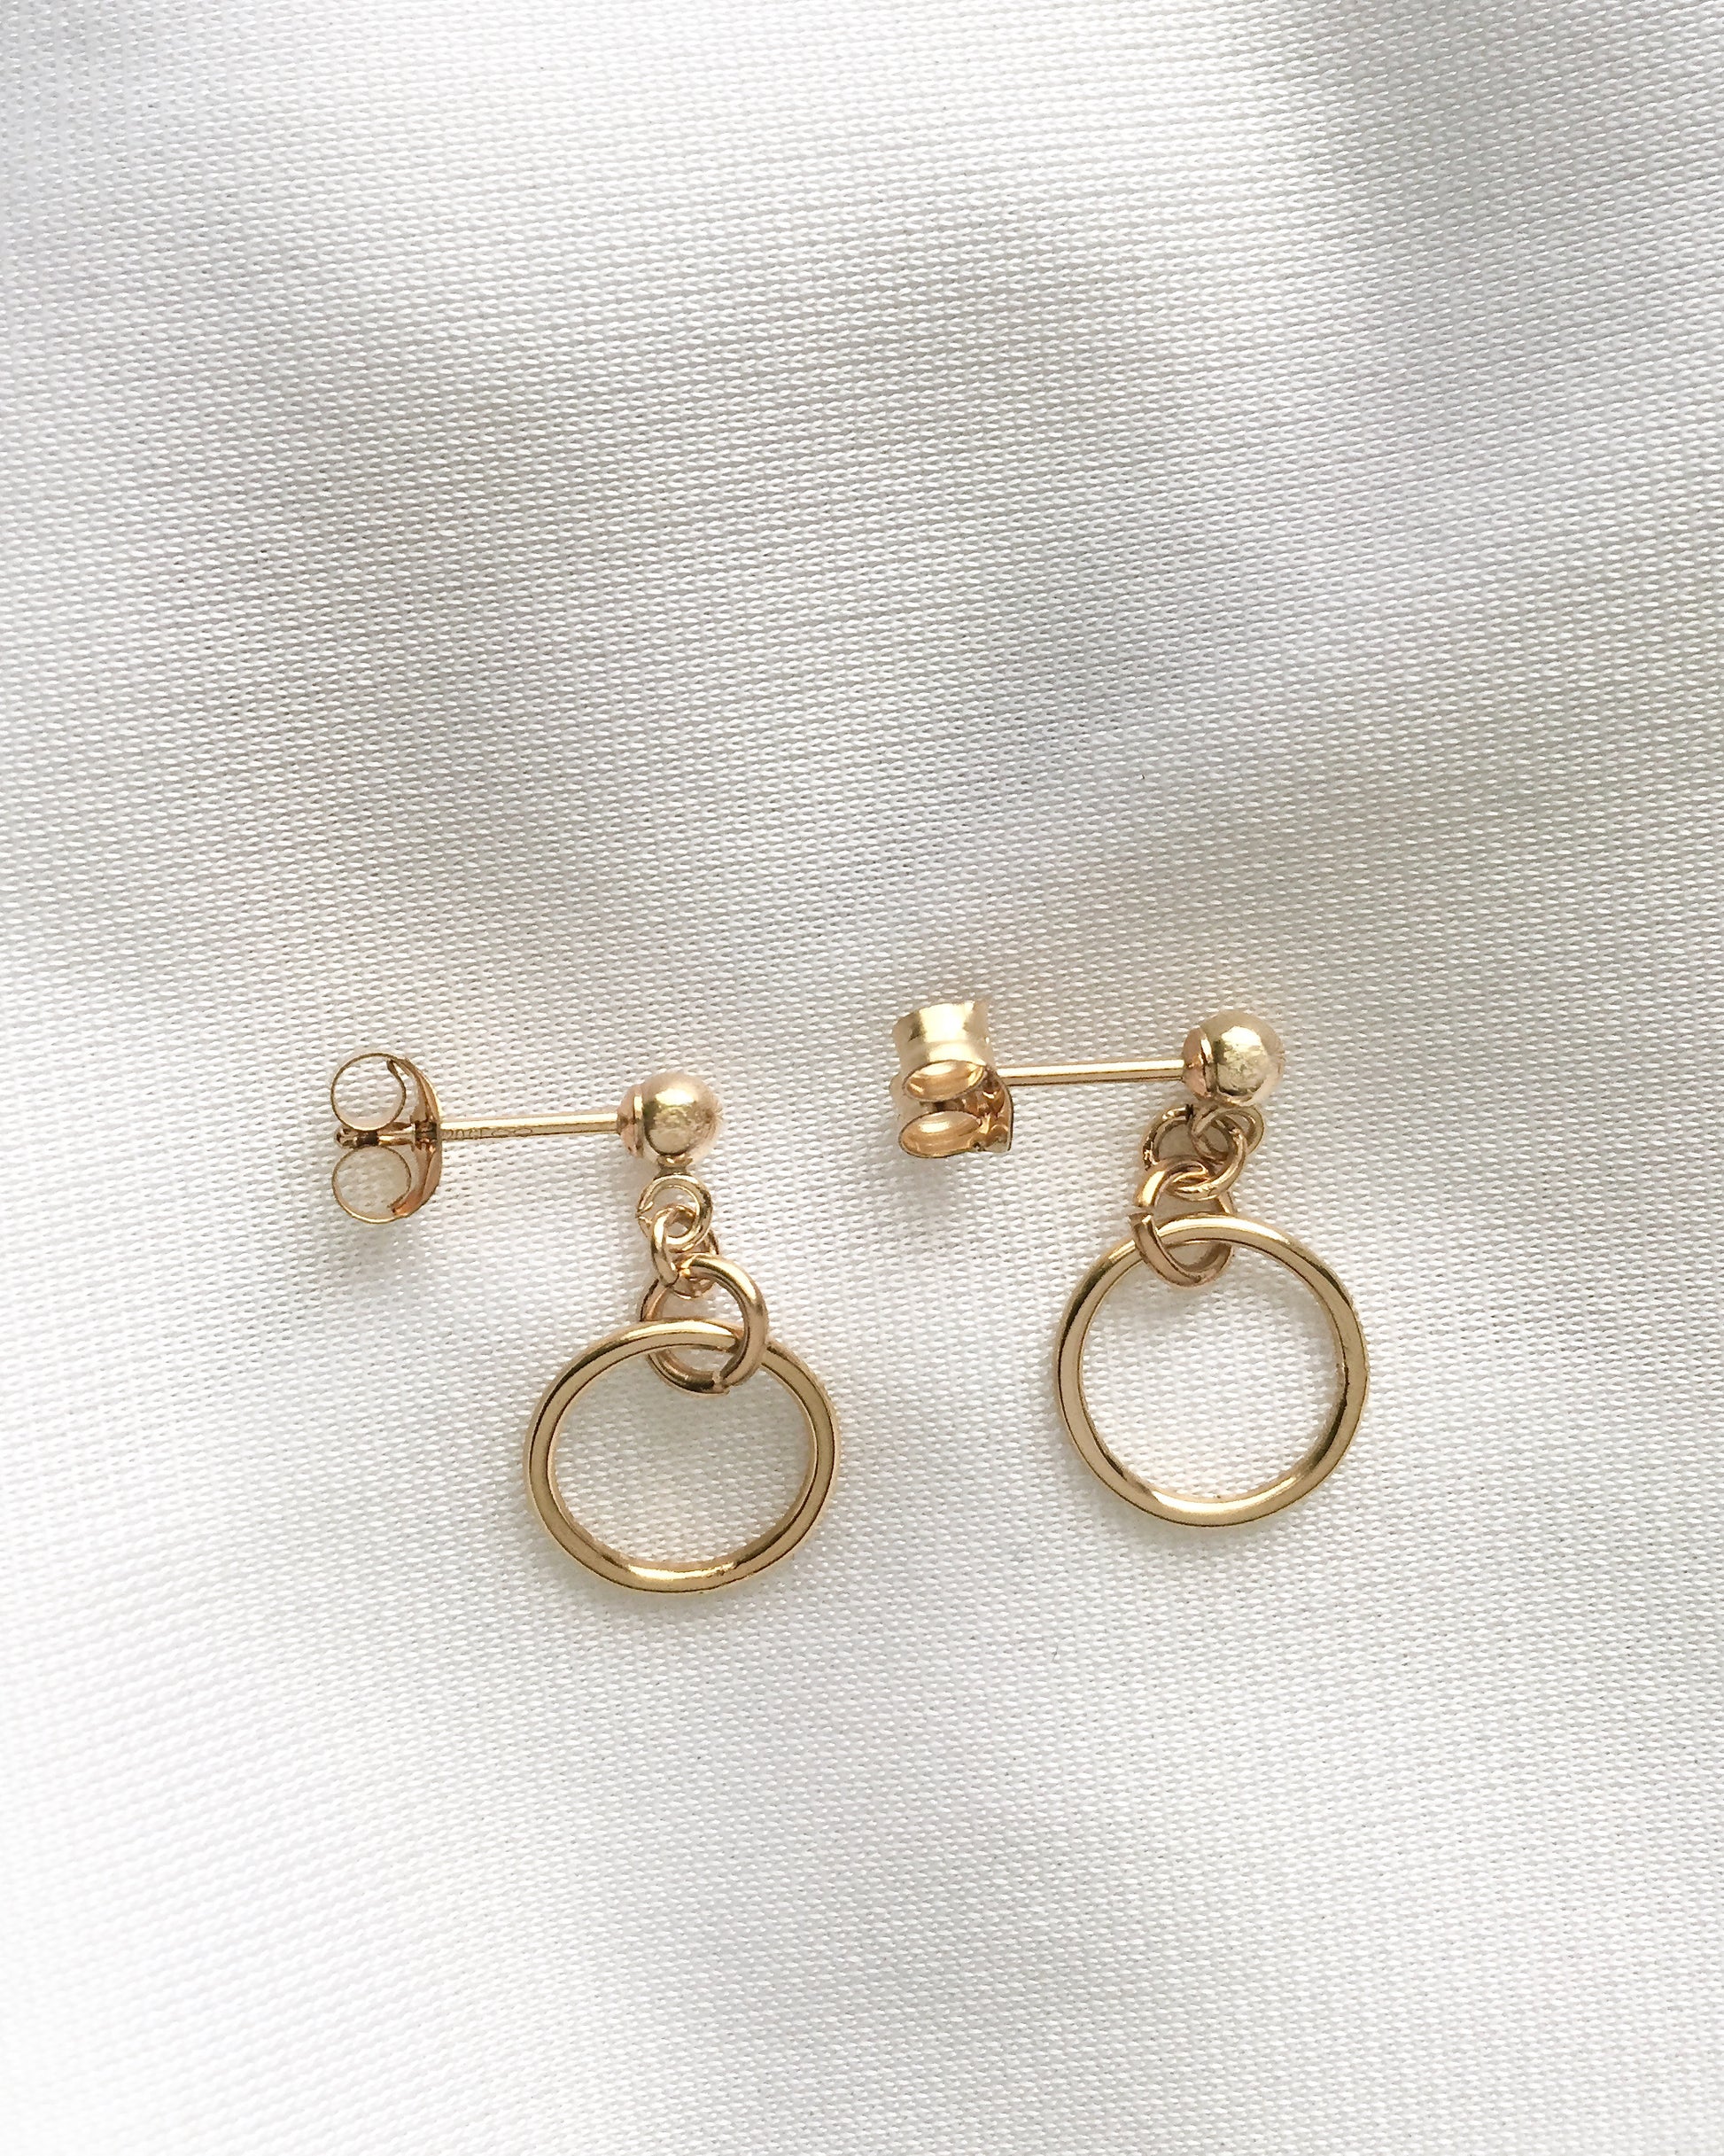 Dainty Open Circle Drop Earrings | Minimalist Everyday Earrings | IB Jewelry